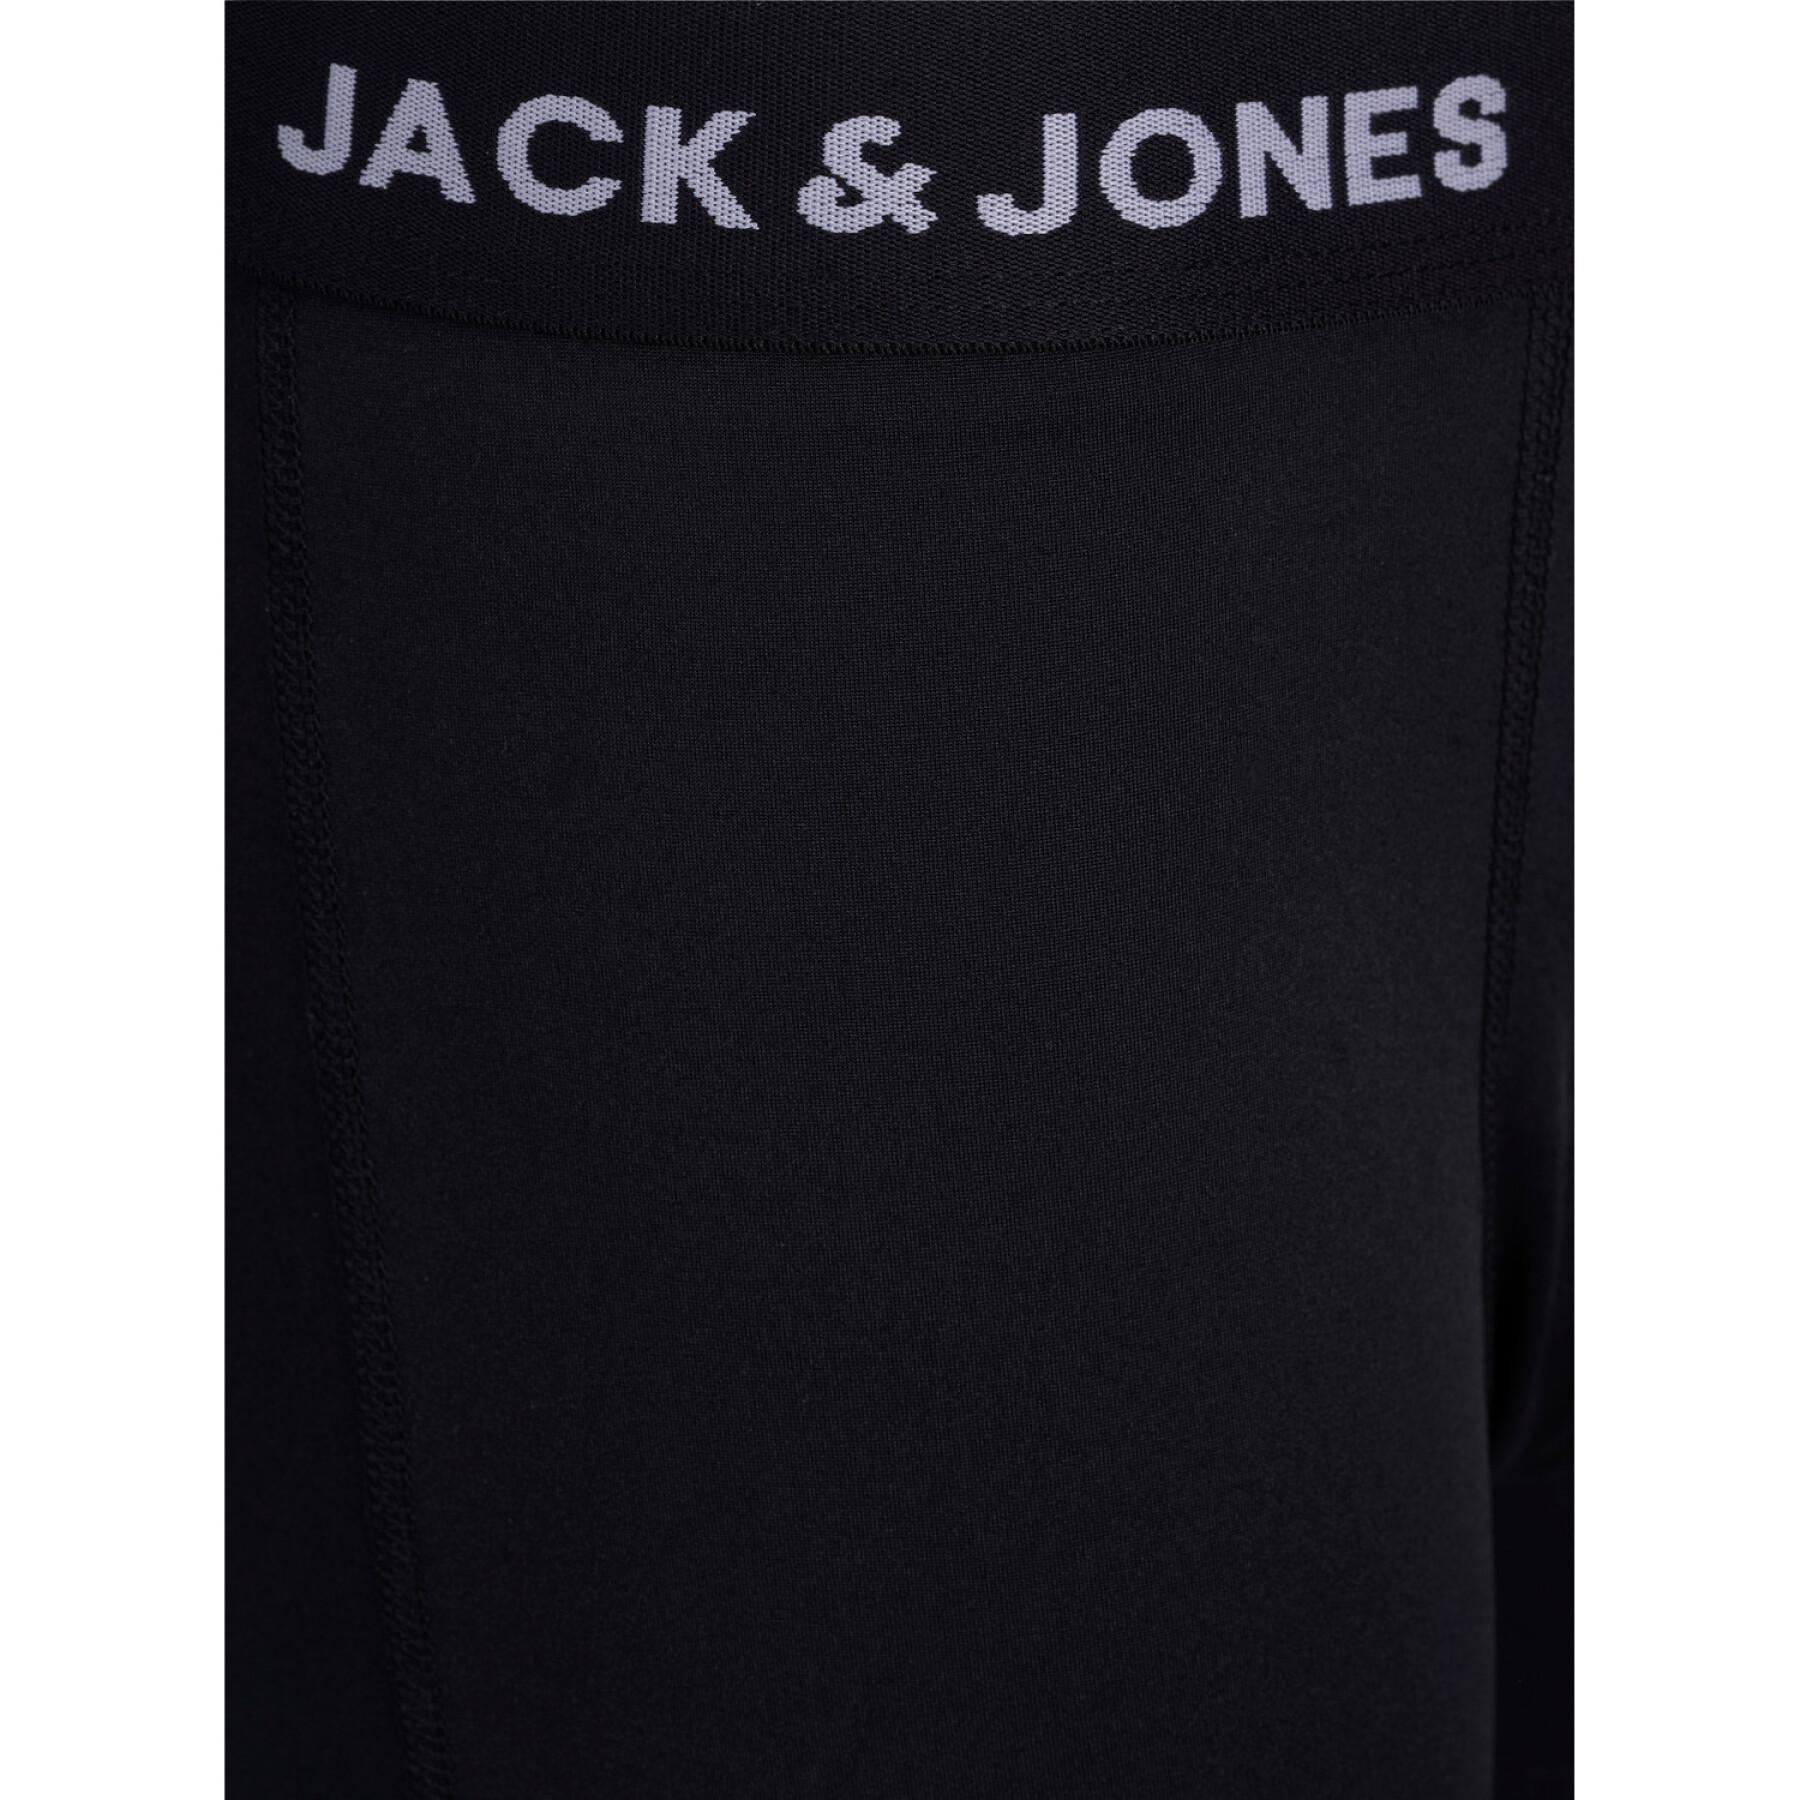 Conjunto de 3 calções de boxe para crianças Jack & Jones Jacbase Microfiber